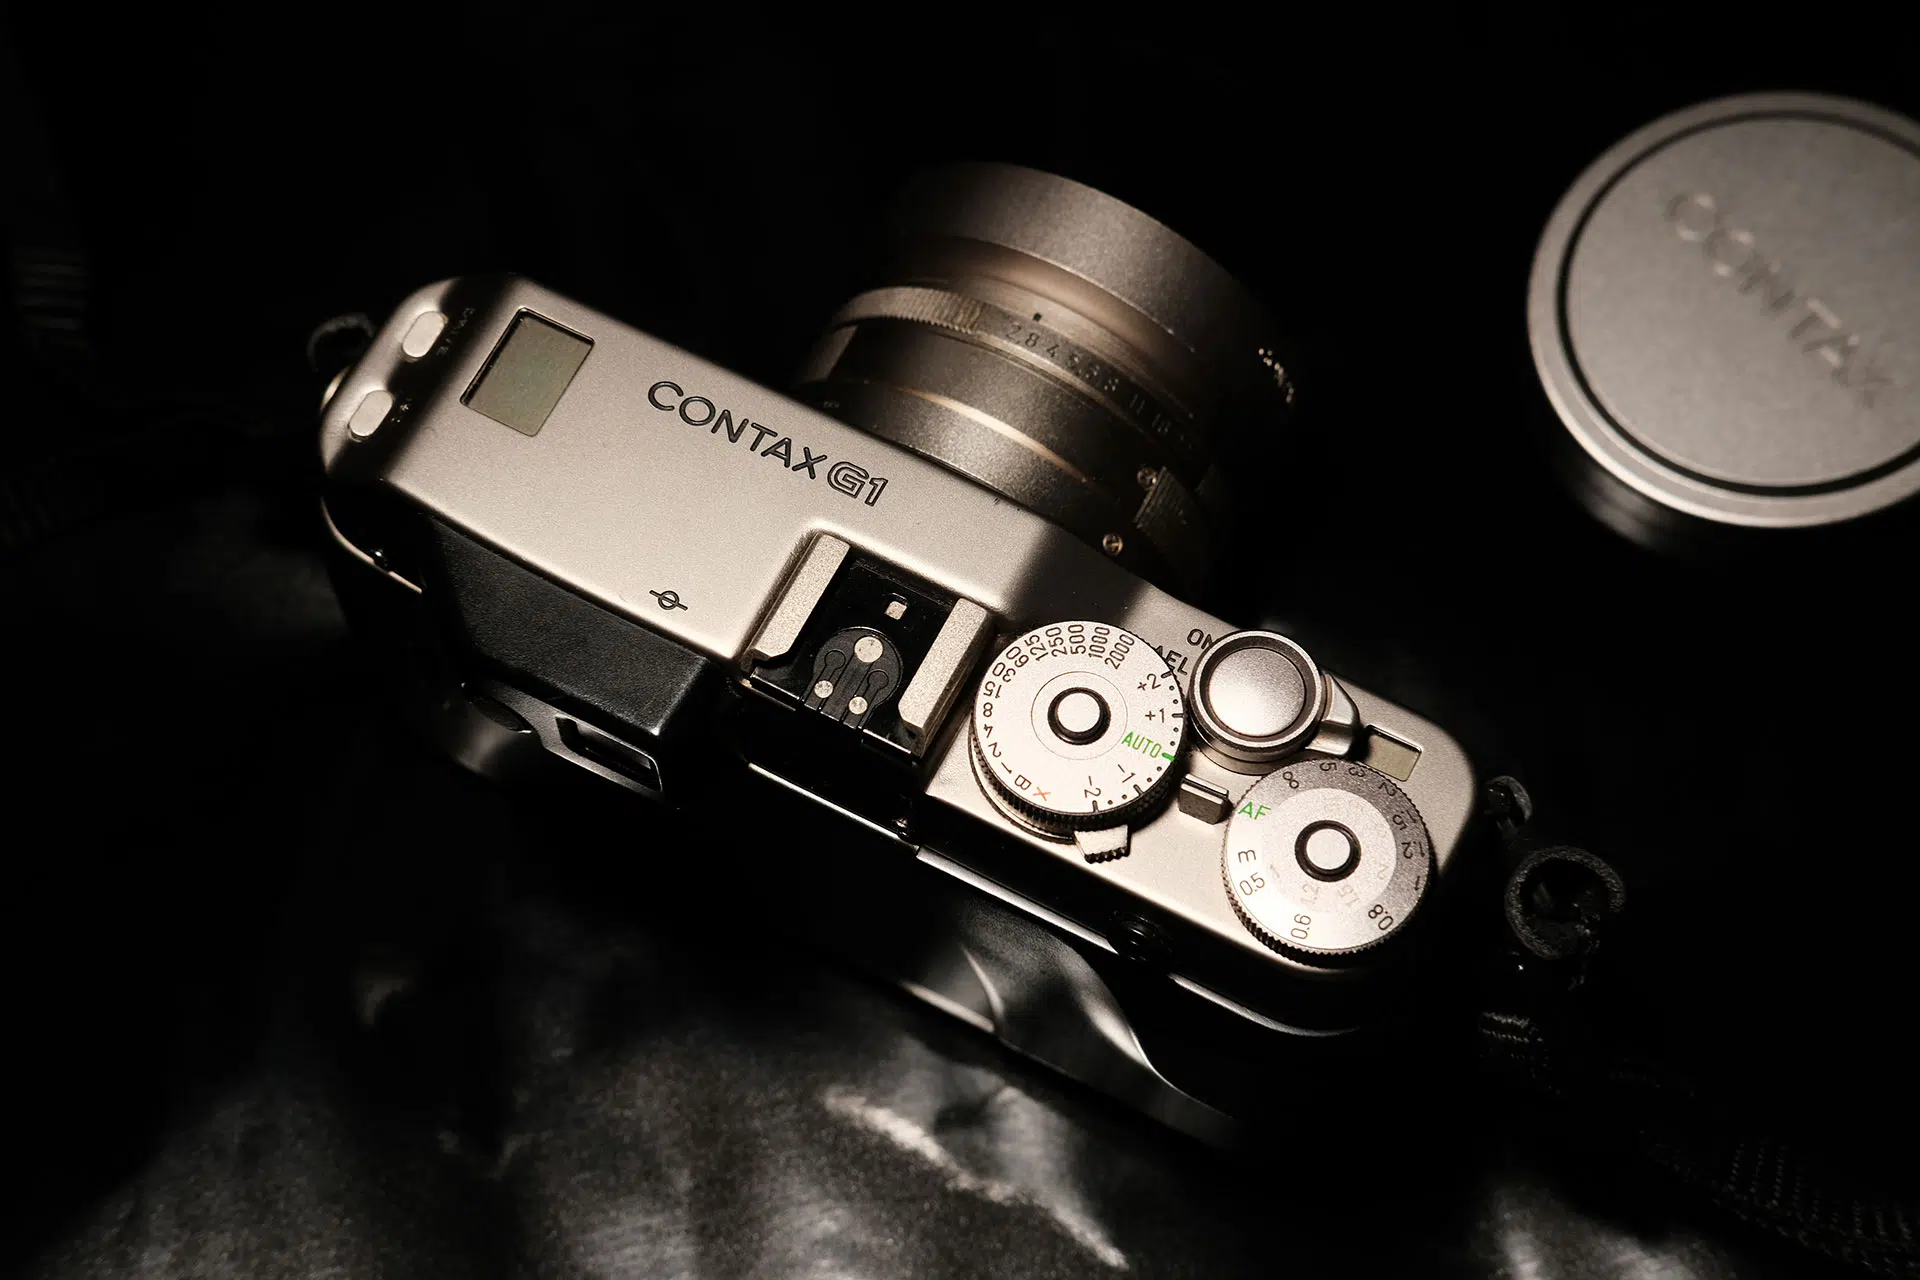 Contax G1 Test - Kodak Vision3 500T & Kodak Ultramax 400